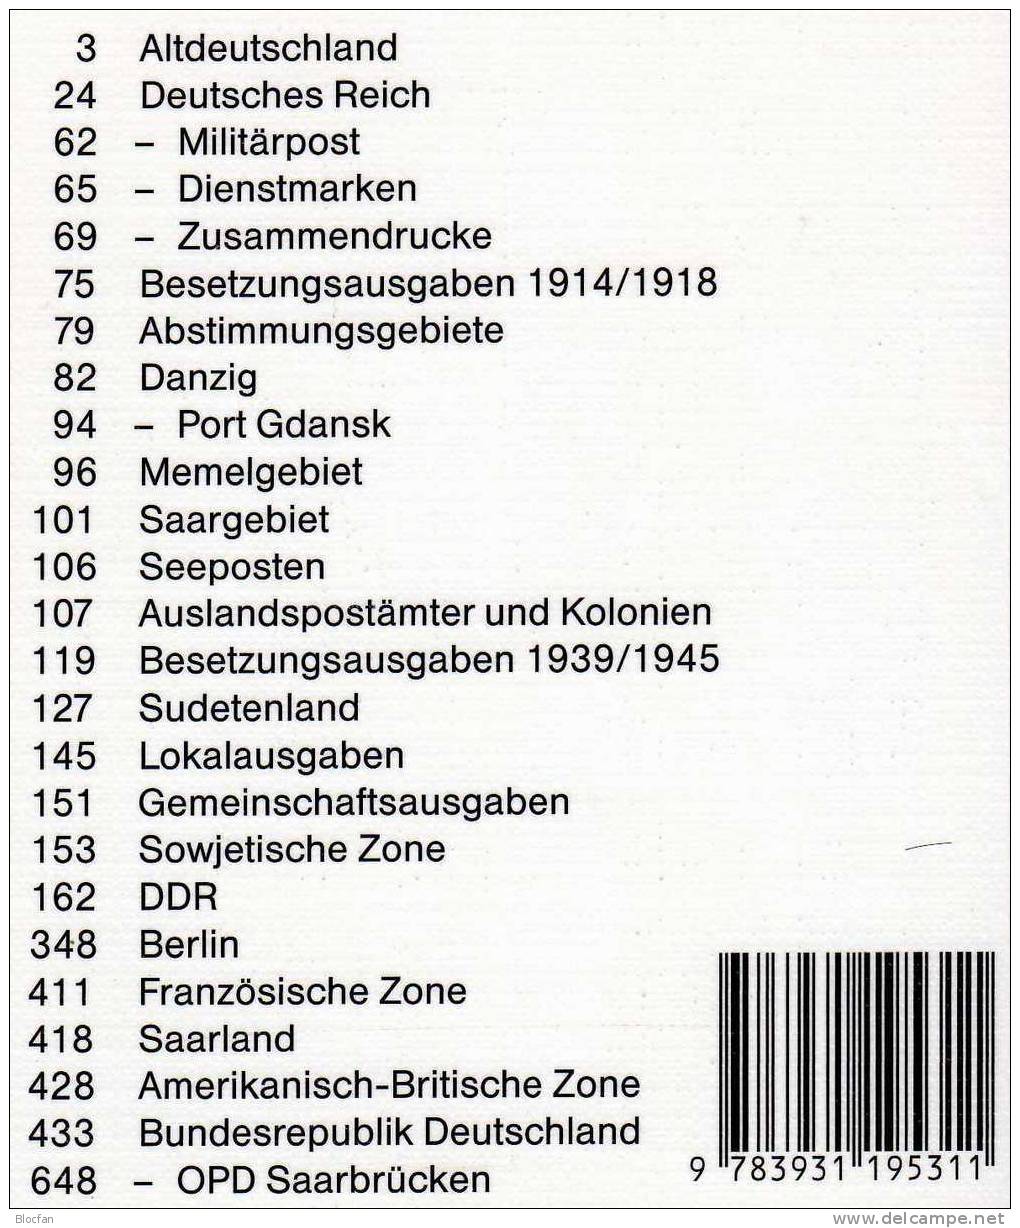 Briefmarken Katalog 2003 Antiquarisch 12€ Philex Altdeutschland Deutsches Reich Saar Danzig Memel SBZ DDR Berlin BRD - Allemagne